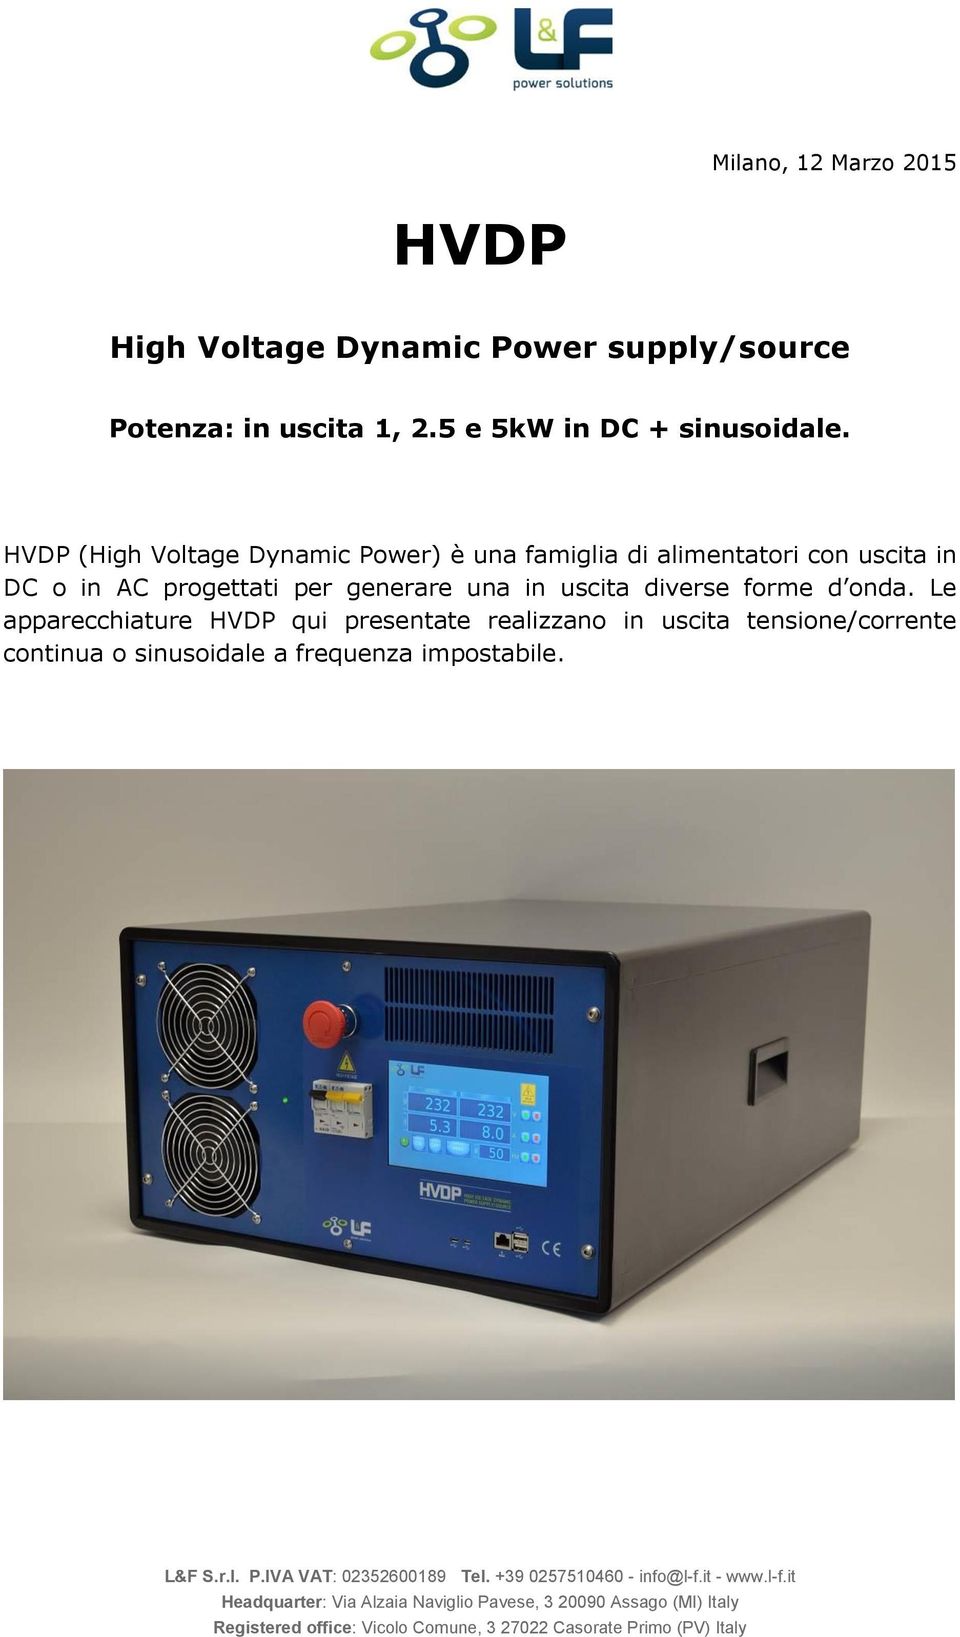 HVDP (High Voltage Dynamic Power) è una famiglia di alimentatori con uscita in DC o in AC